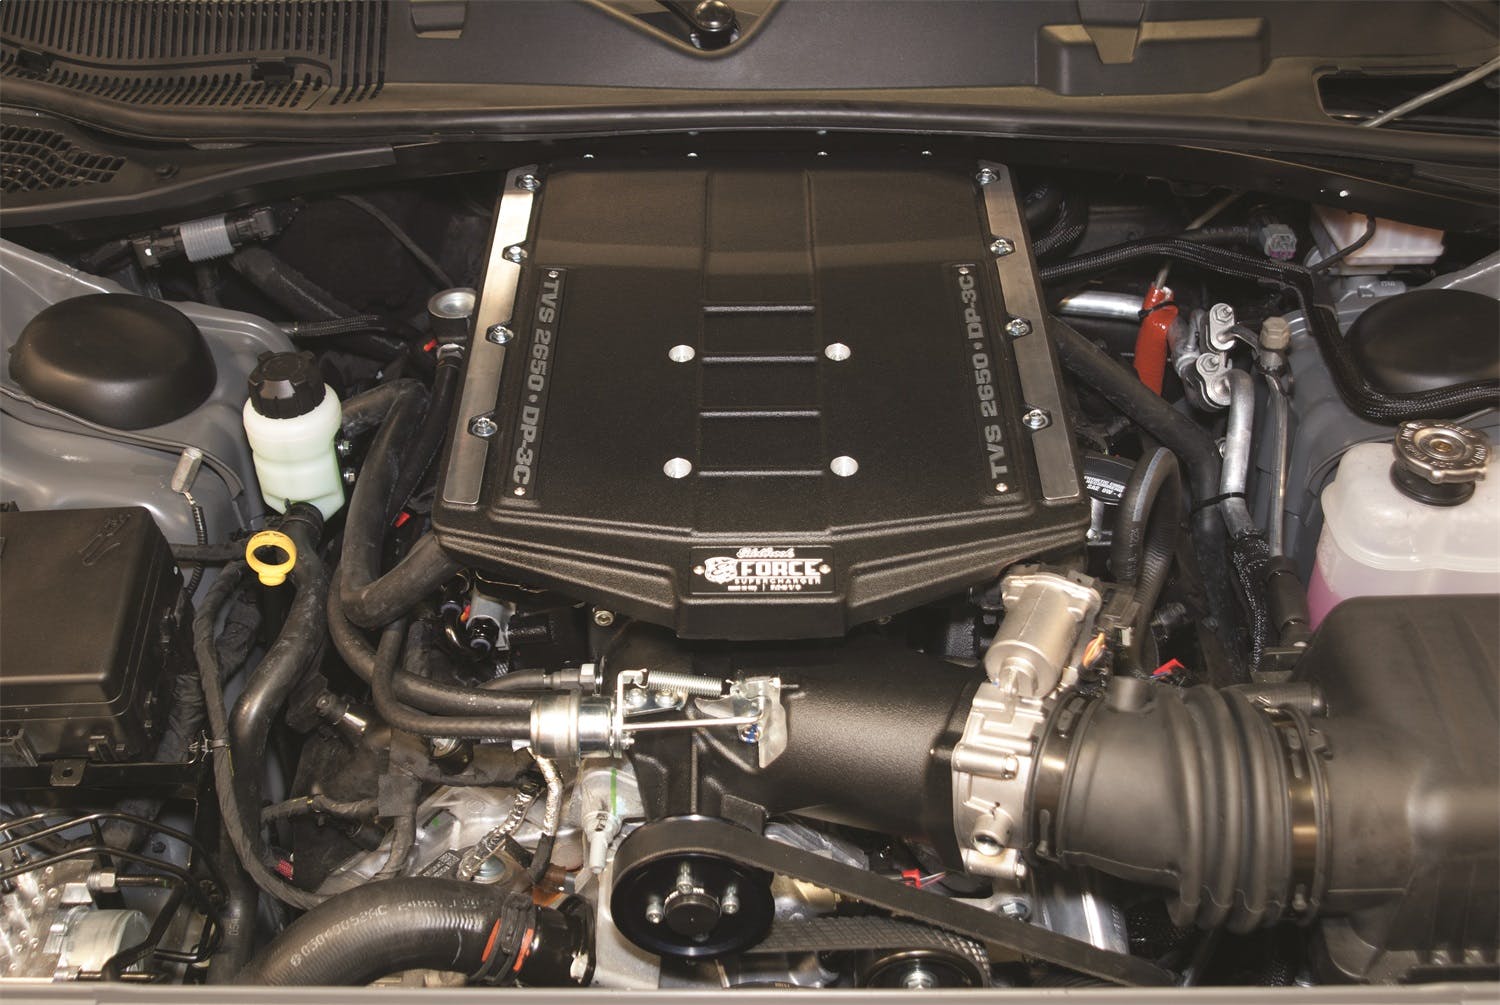 Edelbrock 1517 E-Force 2650 TVS Supercharger for 2015-18 Chrysler/Dodge 5.7L